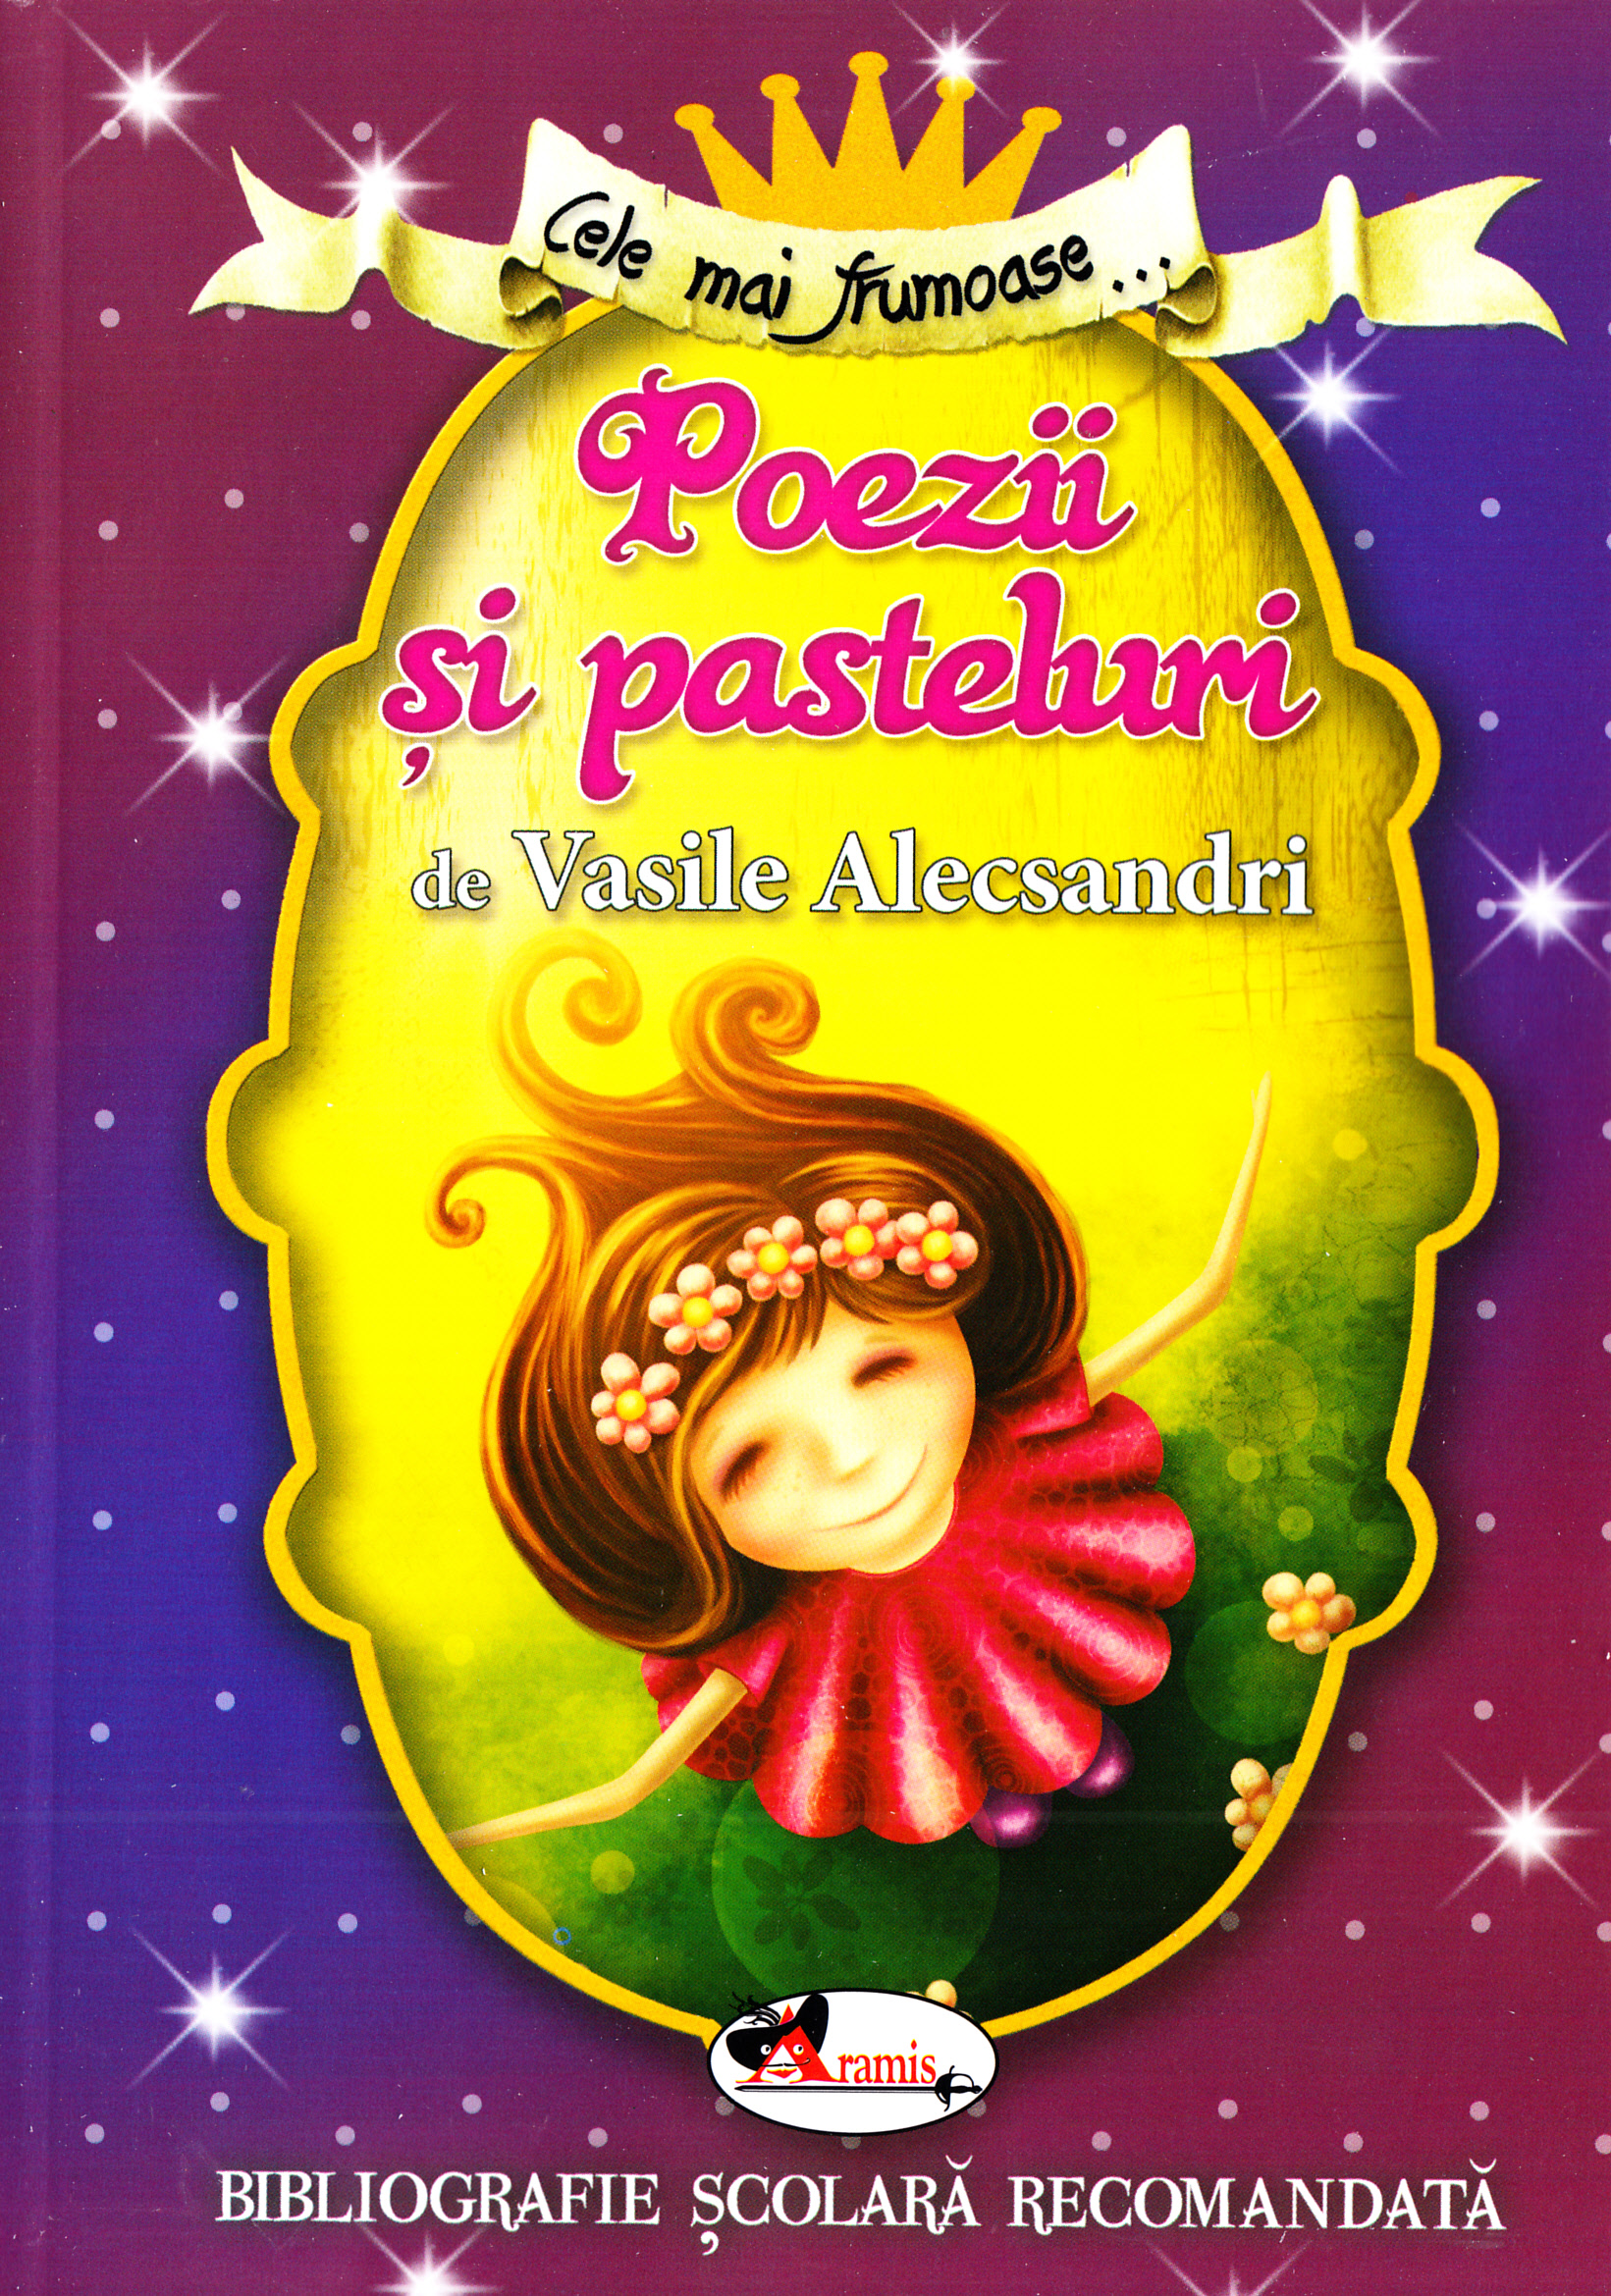 Cele mai frumoase... Poezii si pasteluri de Vasile Alecsandri